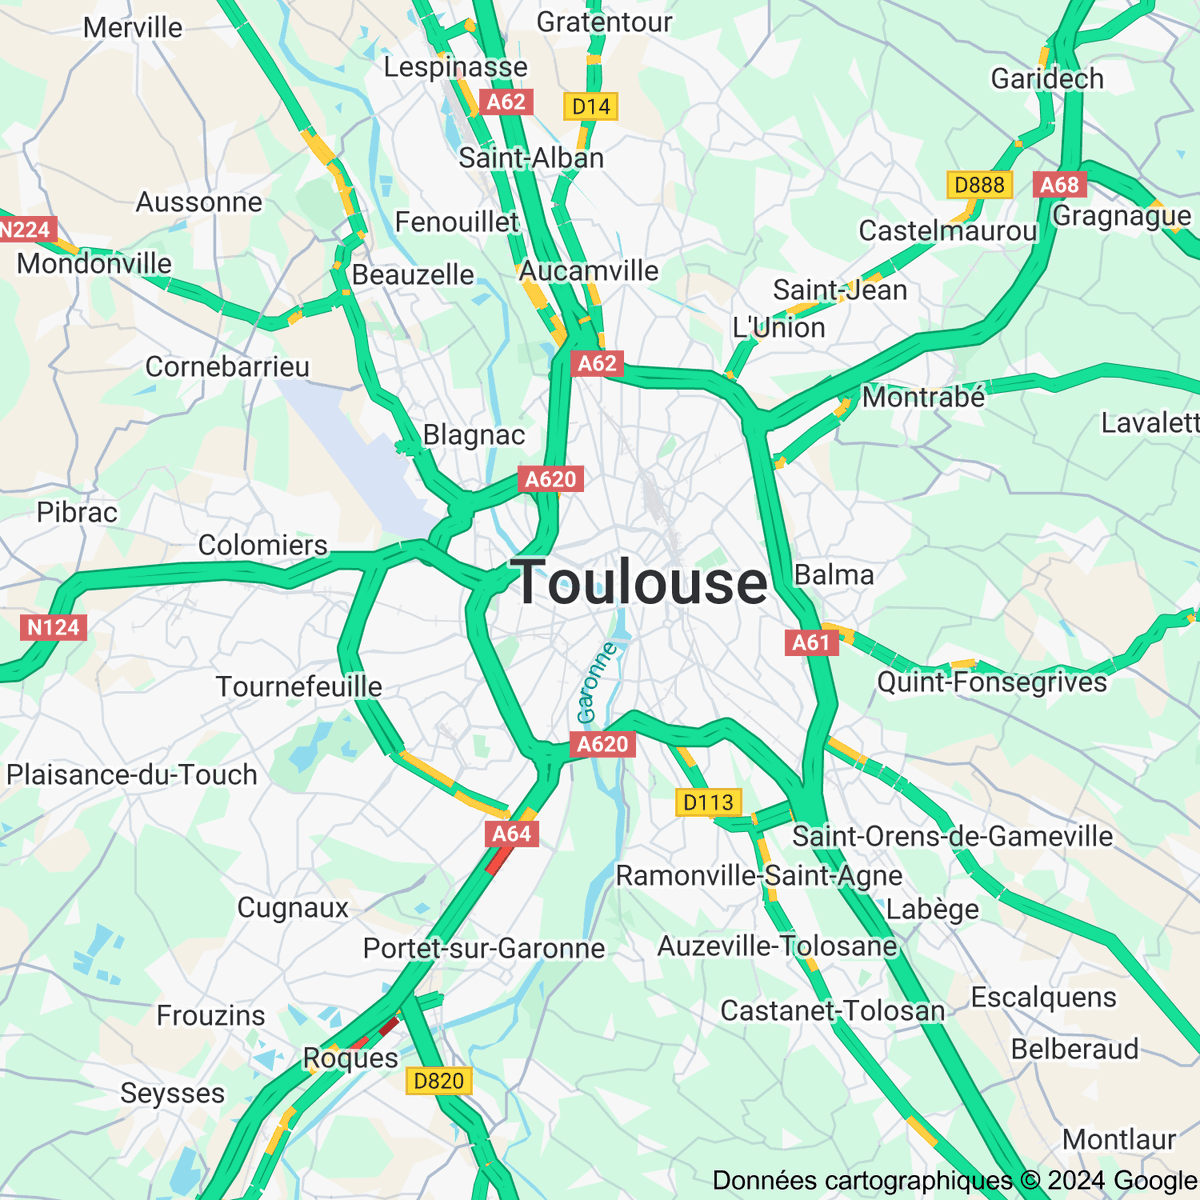 [FLASH 08:30] Trafic routier à Toulouse - toulousetrafic.com #Toulouse #ToulousePeriph #InfoTrafic